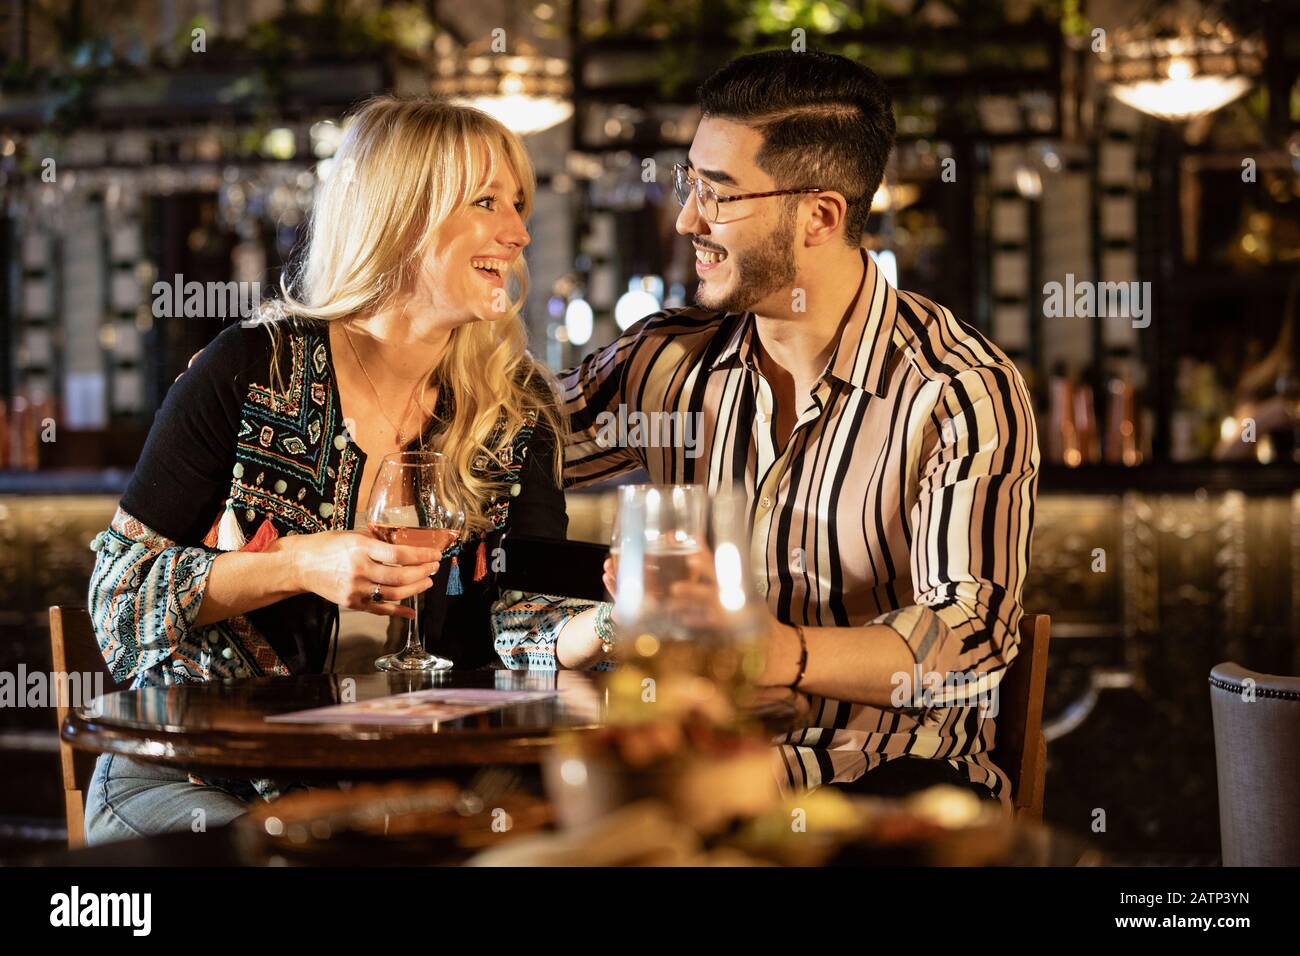 Ein heterosexuelles Paar sitzt und trinkt zusammen in einer Bar, während es sich betrachtet und lächelt. Stockfoto